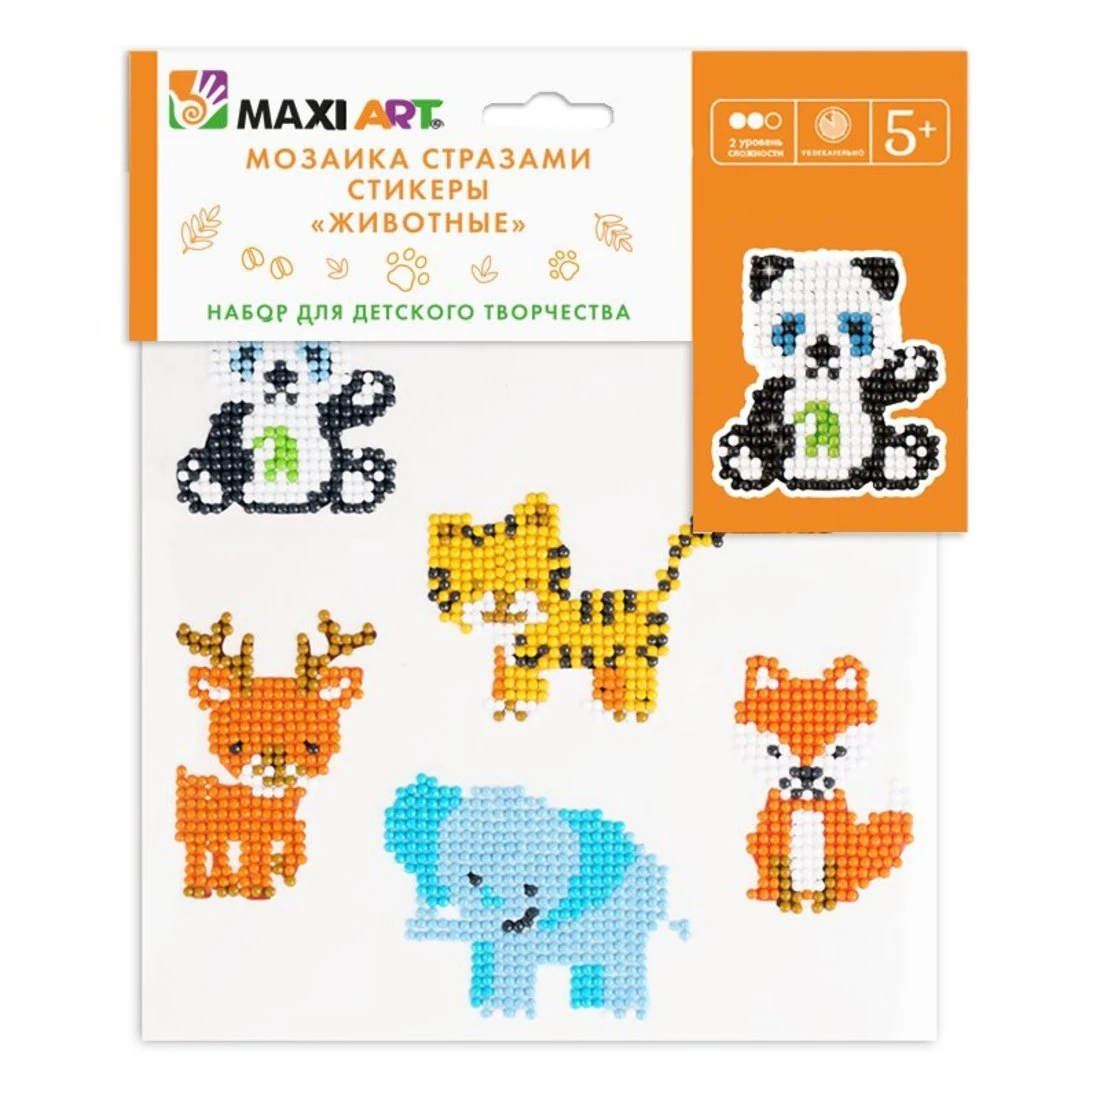 Мозаика стразами Maxi Art набор из 6 стикеров со стразами Животные 20х20 см.